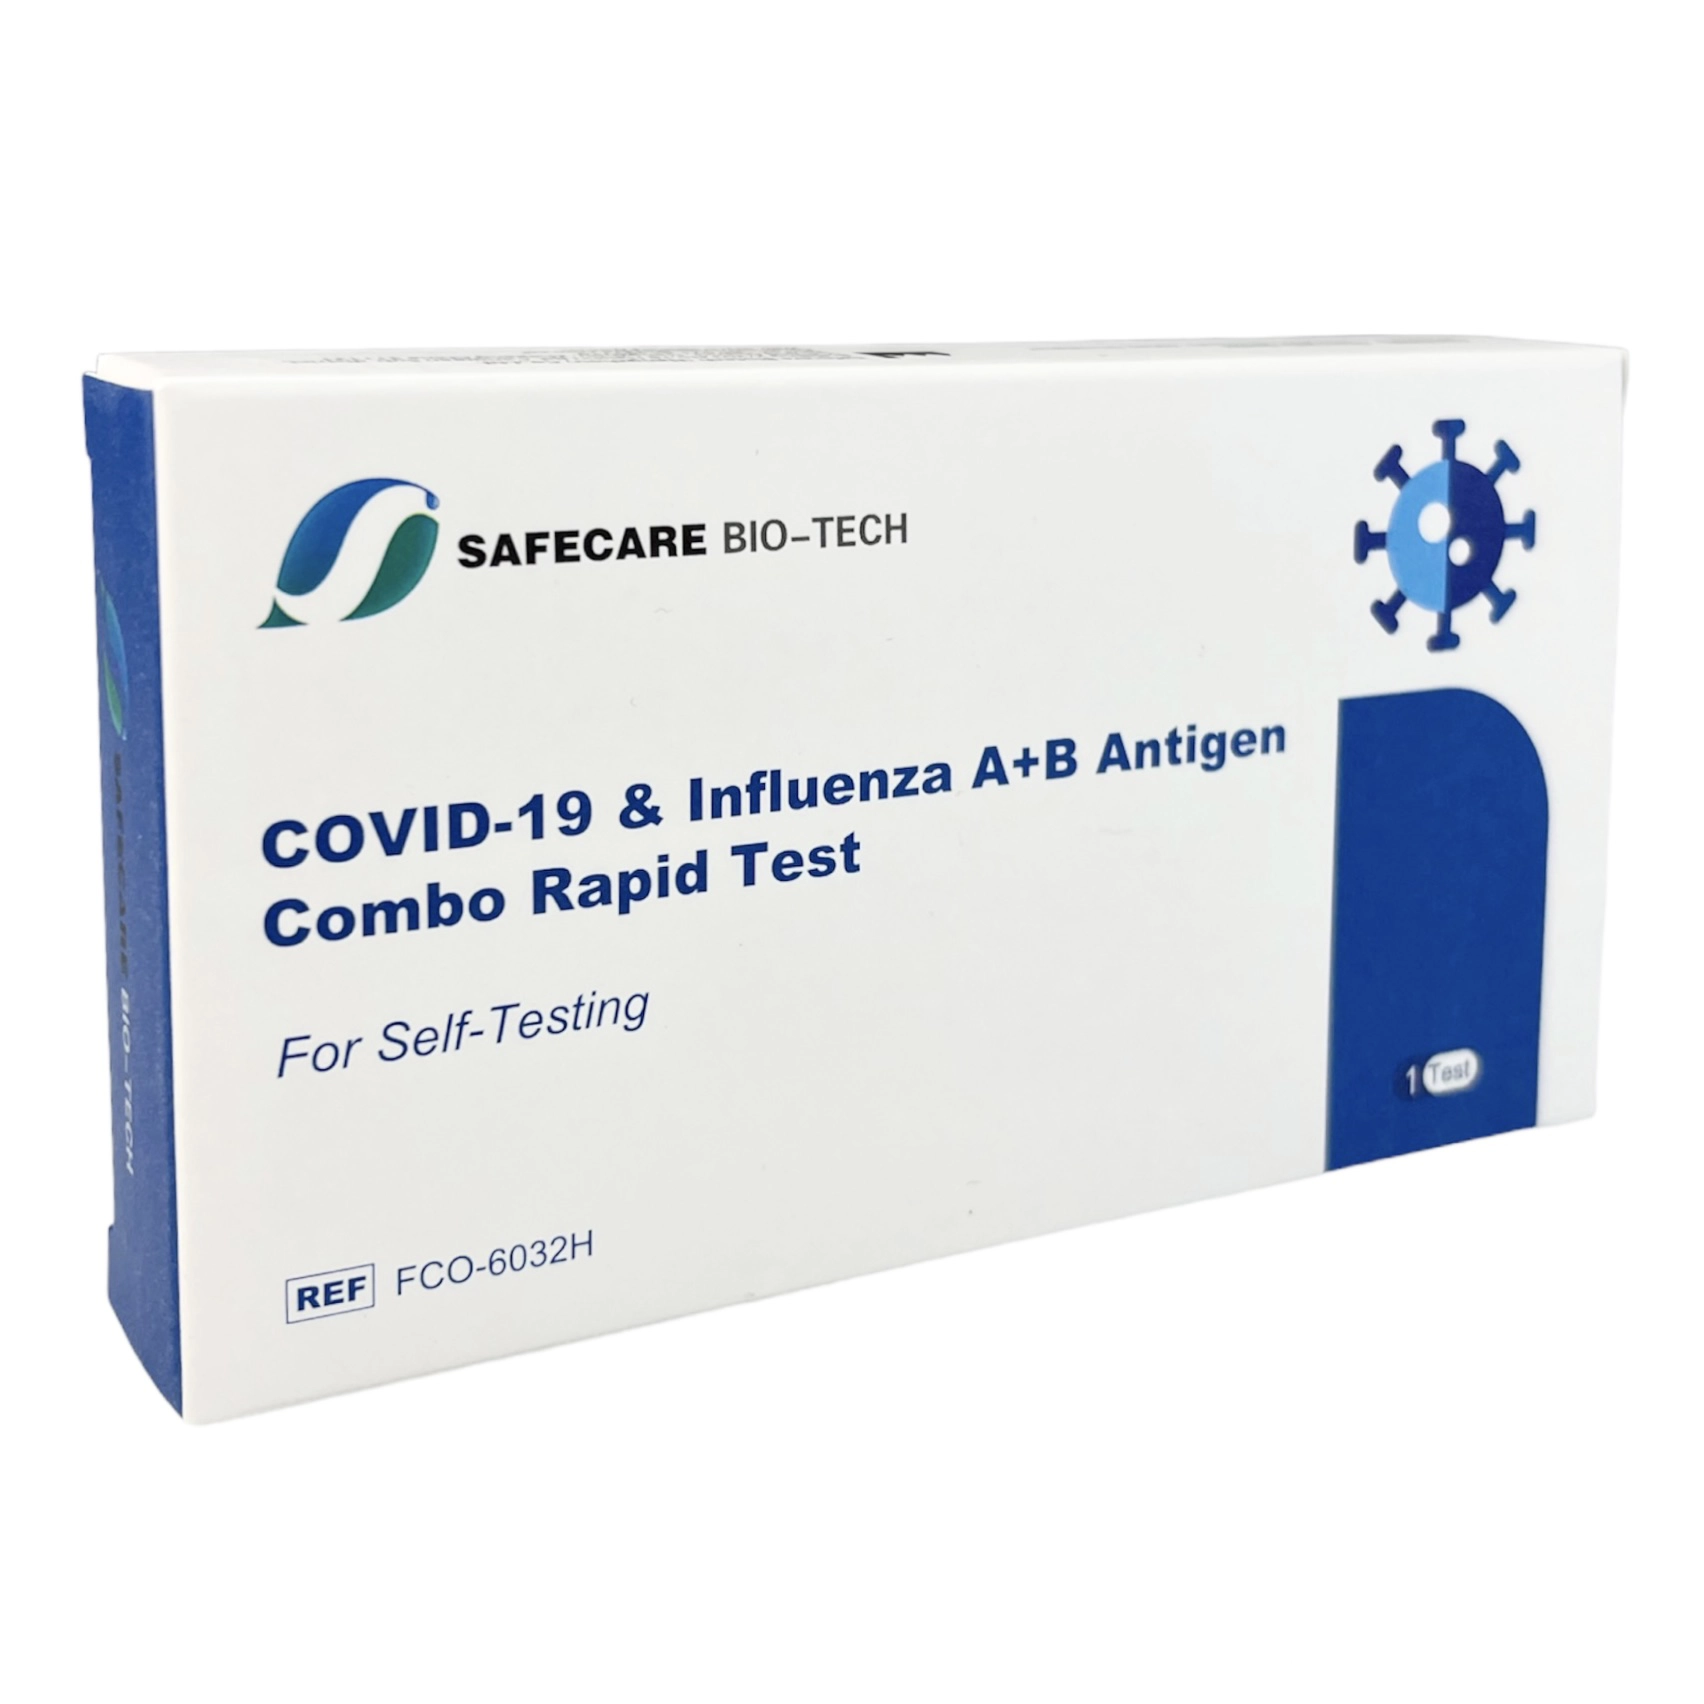 https://westfalencare.de/wp-content/uploads/2023/01/1x-SAFECARE-COVID-19-Influenza-AB-Antigen-Combo-Rapid-Test-1-Faltschachtel.webp